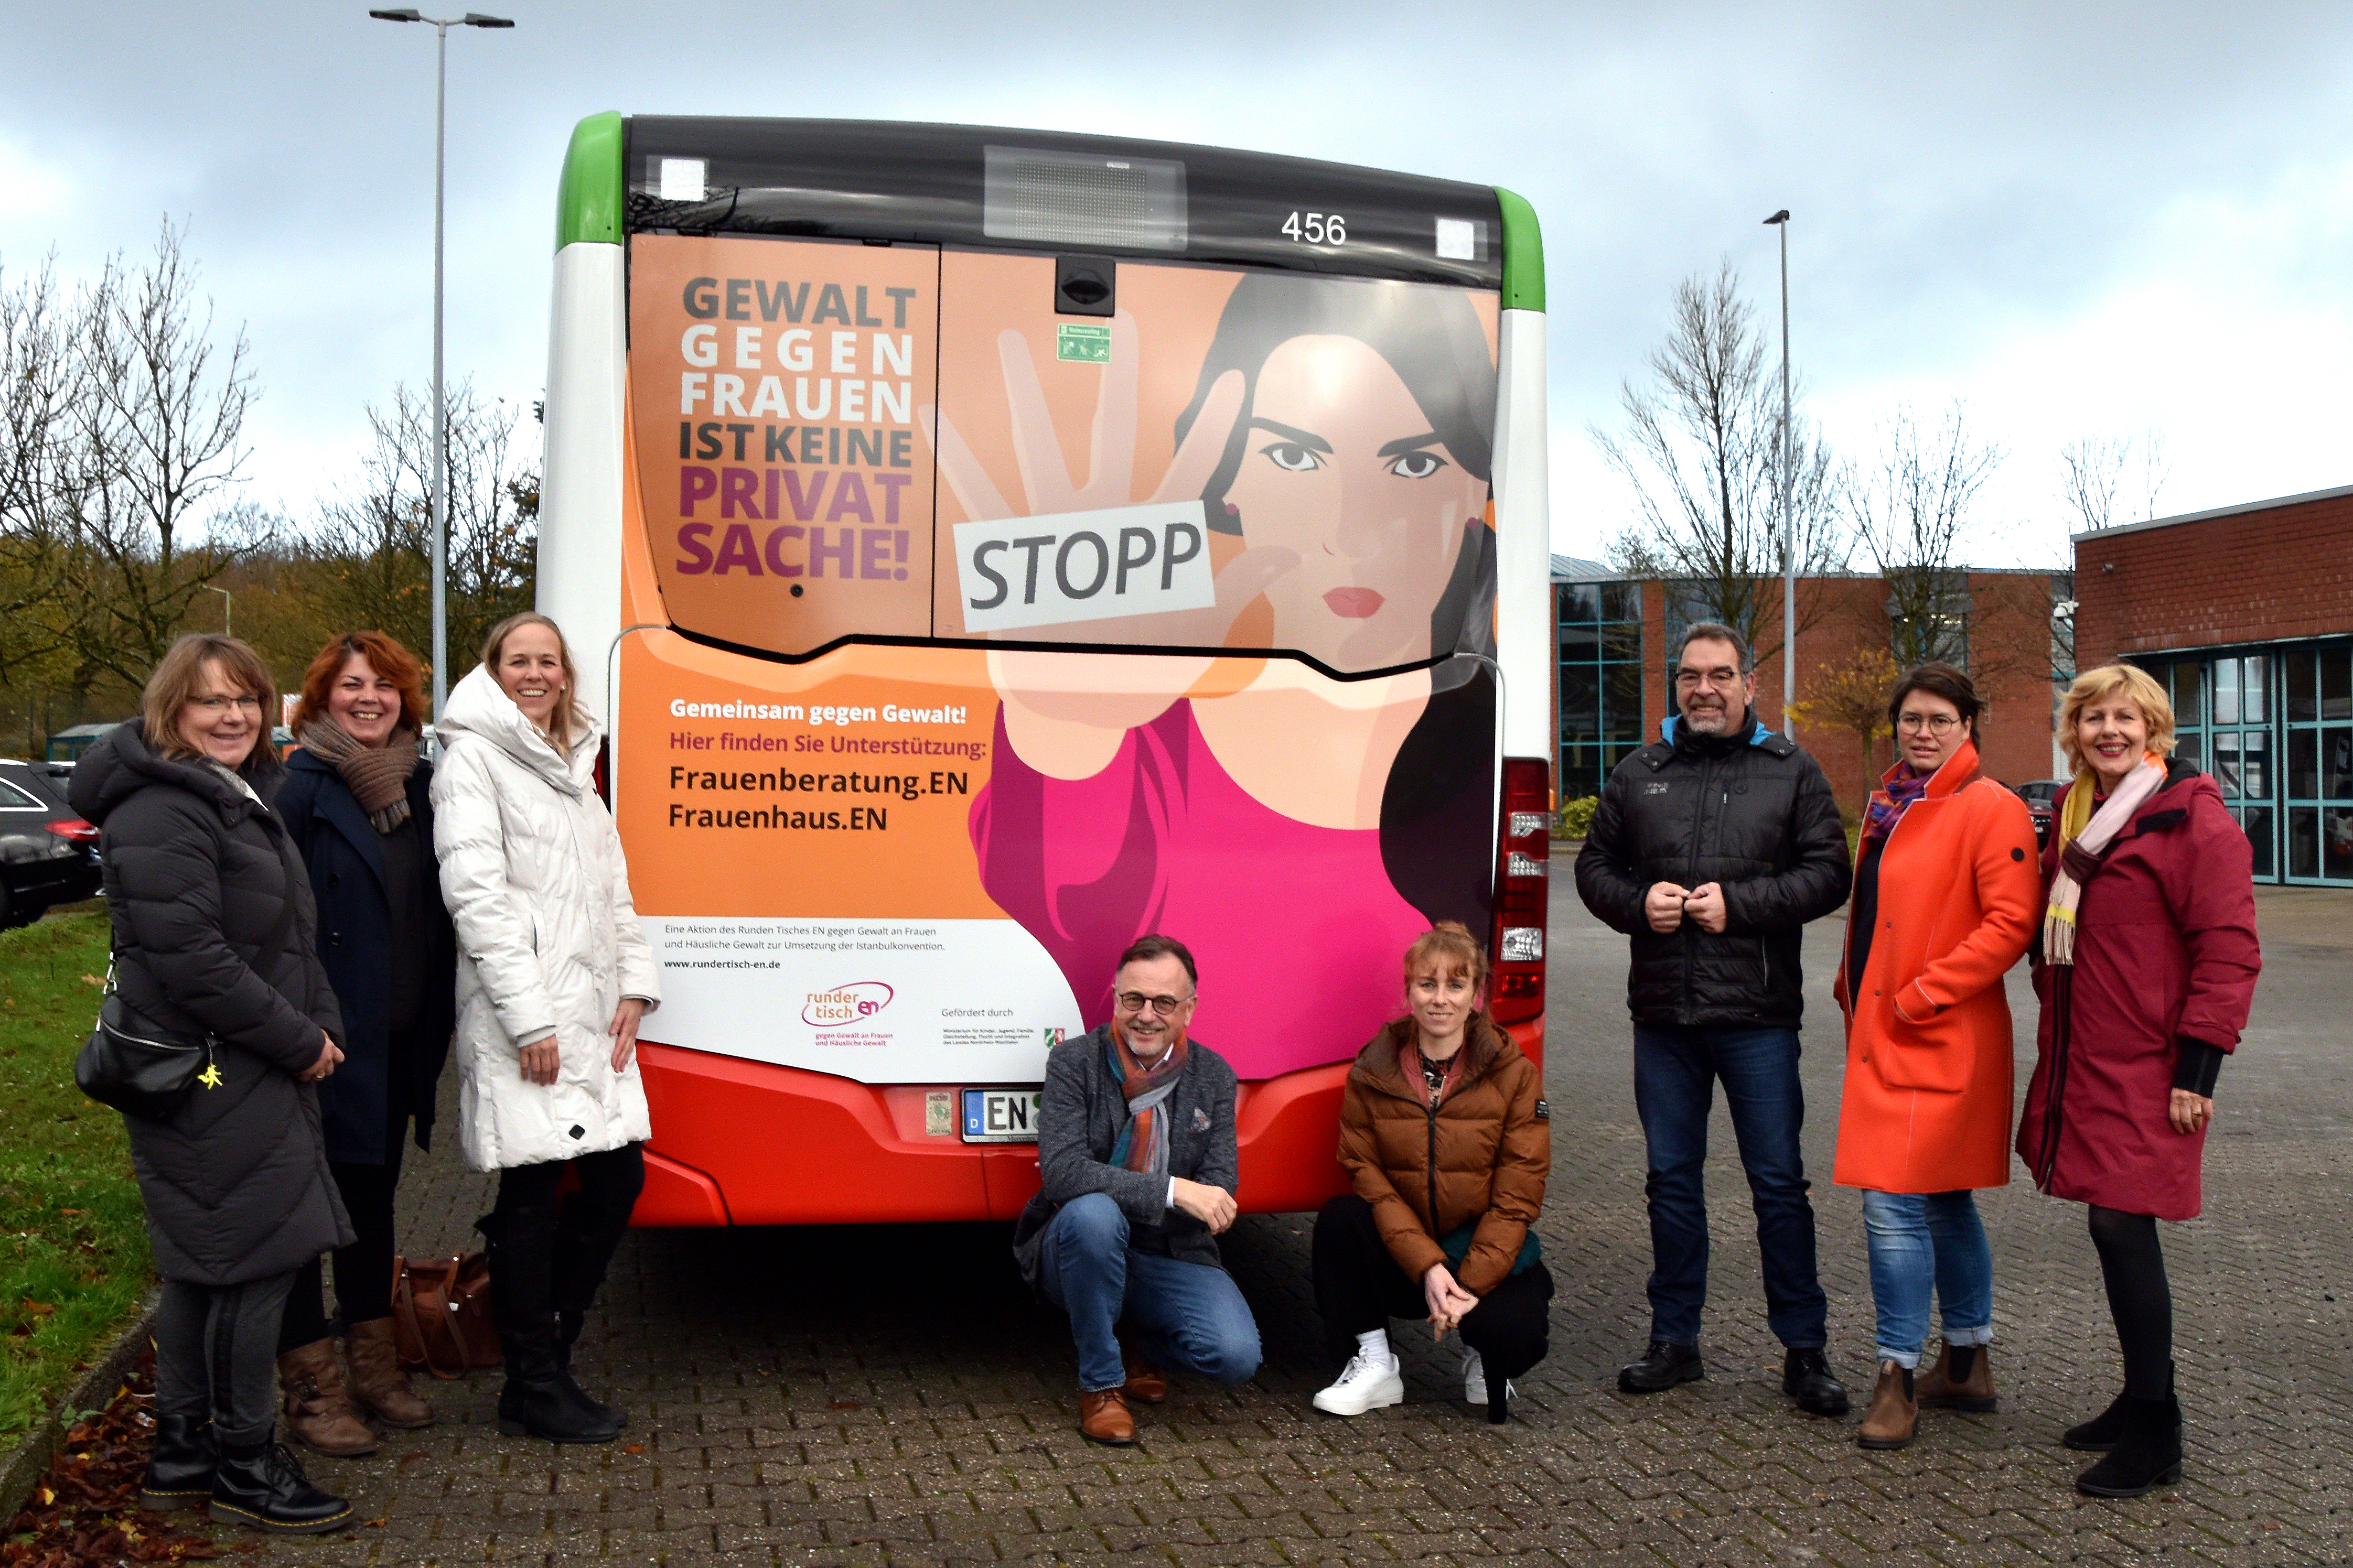 Gruppenportrait von Personen vor einem beschrifteten Bus